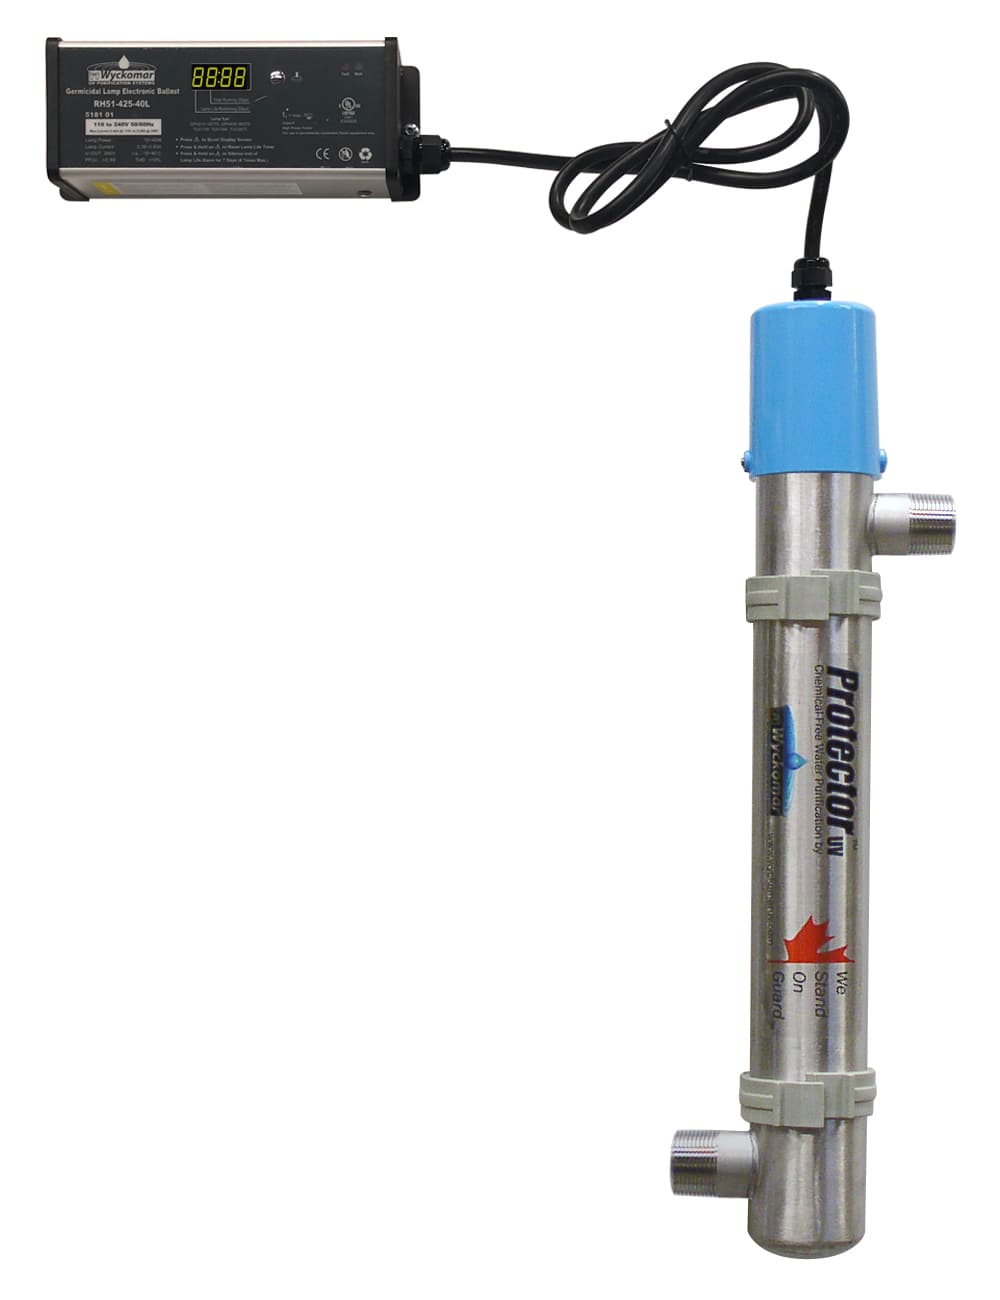 Wyckomar UV-250HO UV Sterilization System